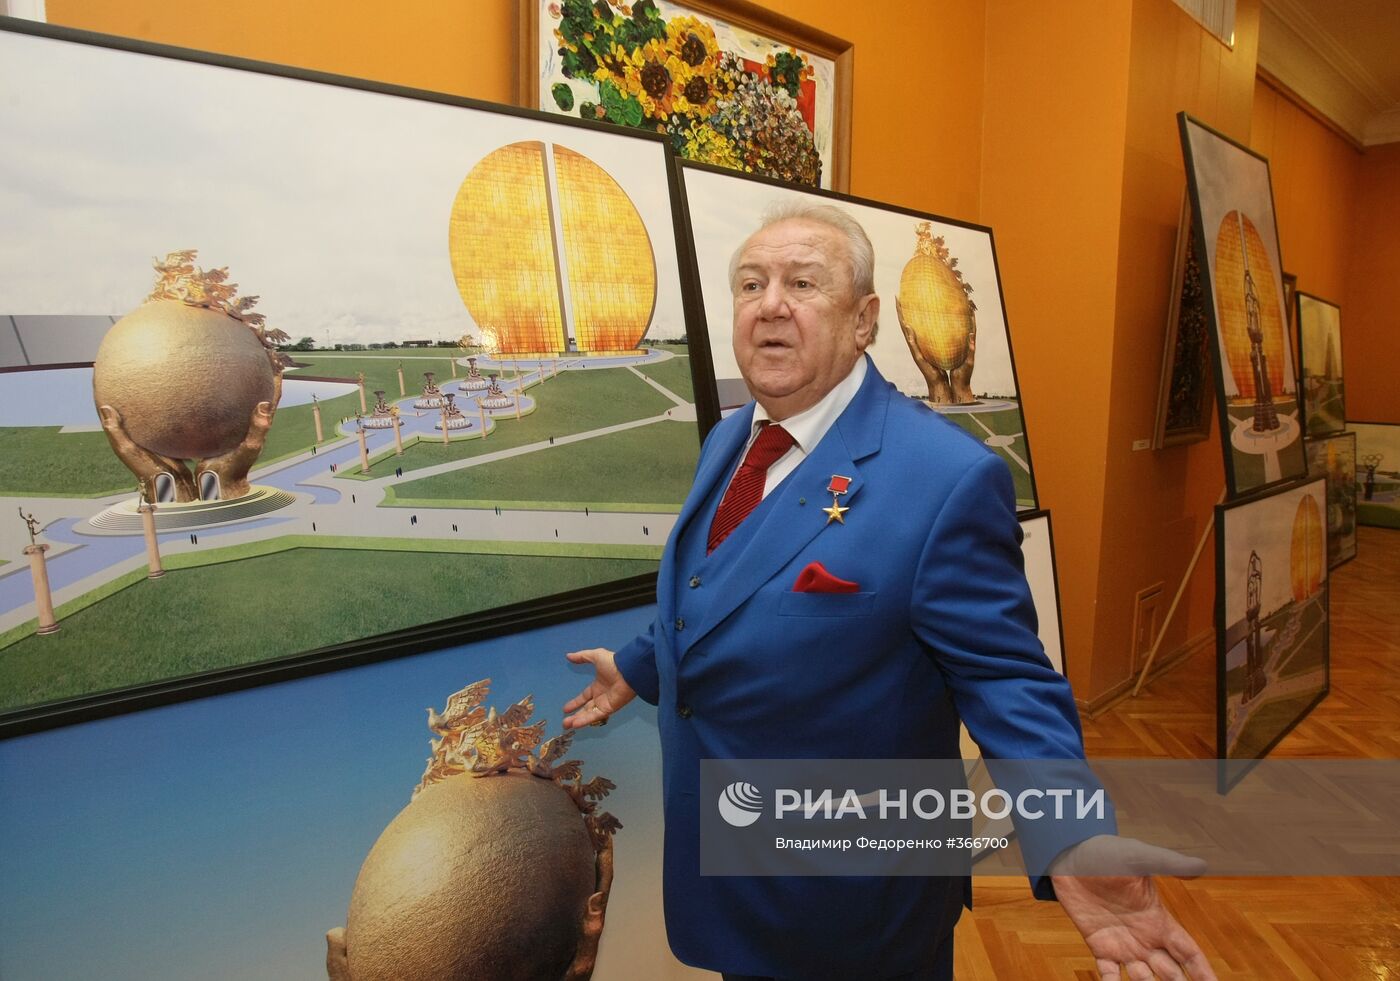 Президент Российской академии художеств Зураб Церетели